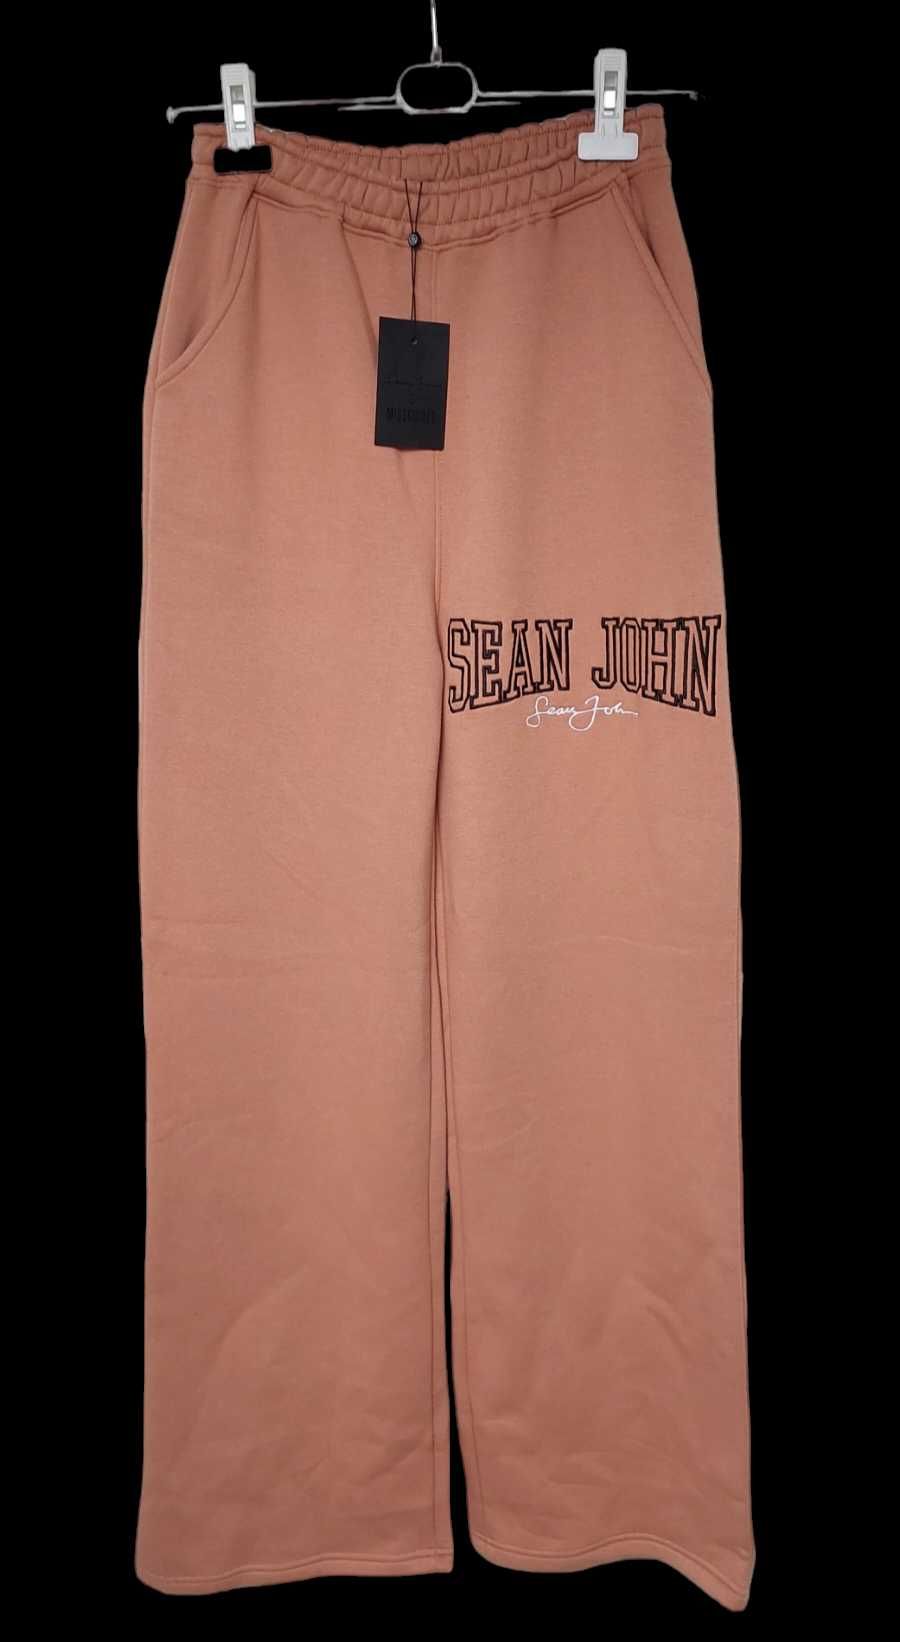 Spodnie dresowe z szerokimi nogawkami MISSGUIDED SEAN JOHN, R. 34